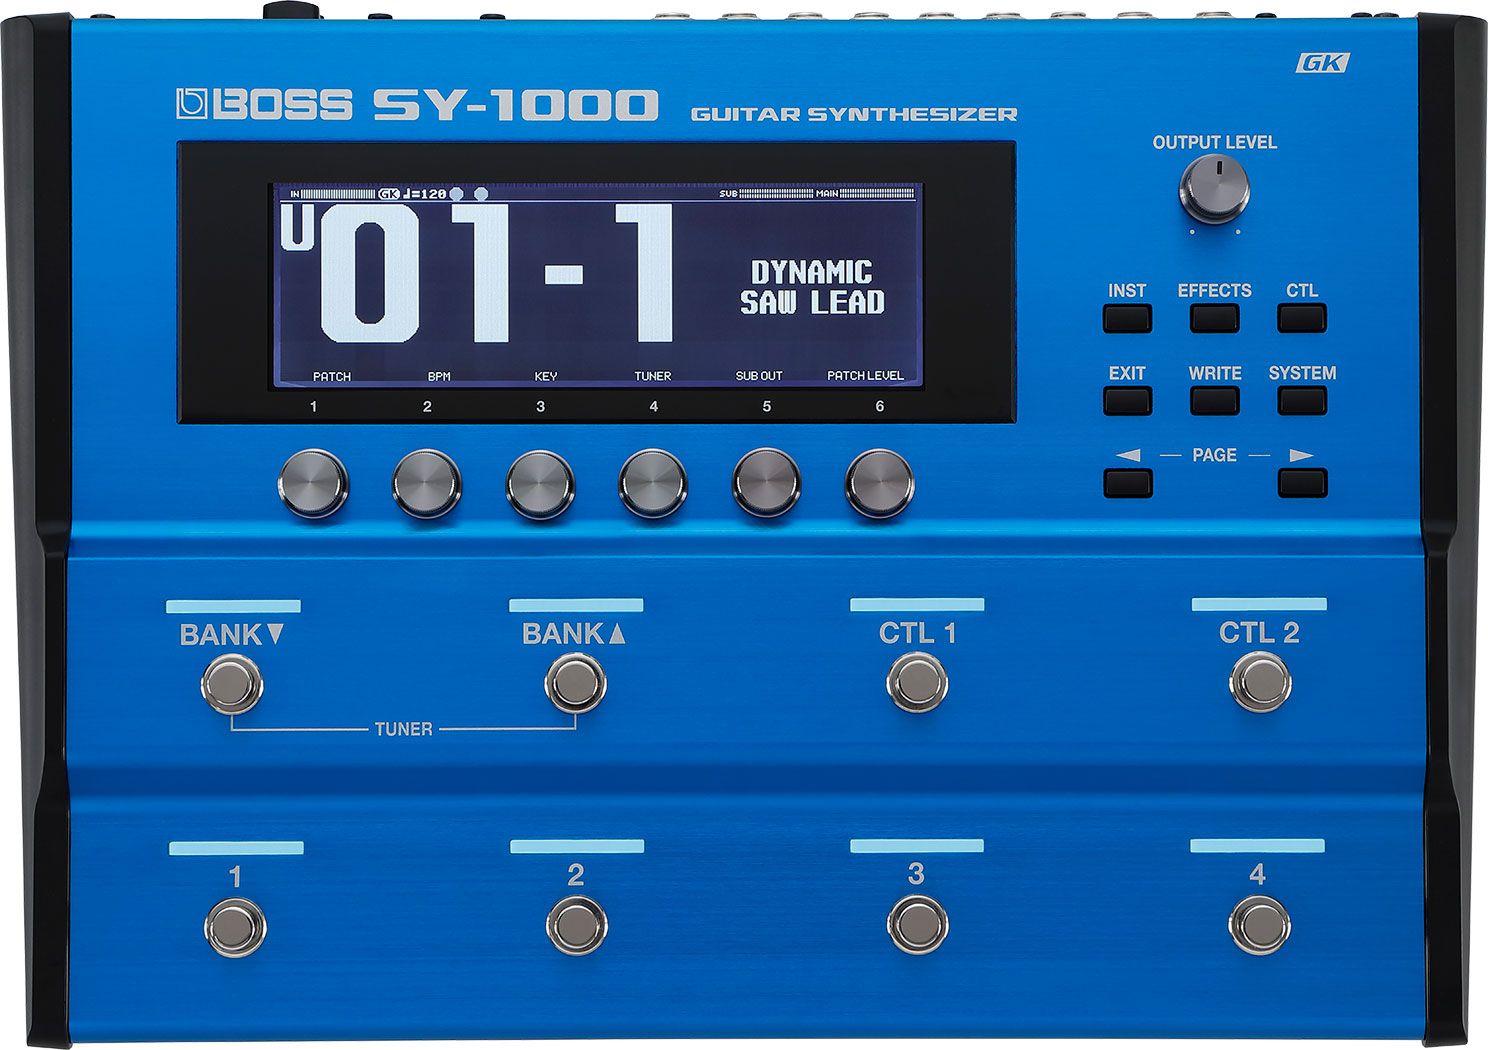 BOSS SY-1000